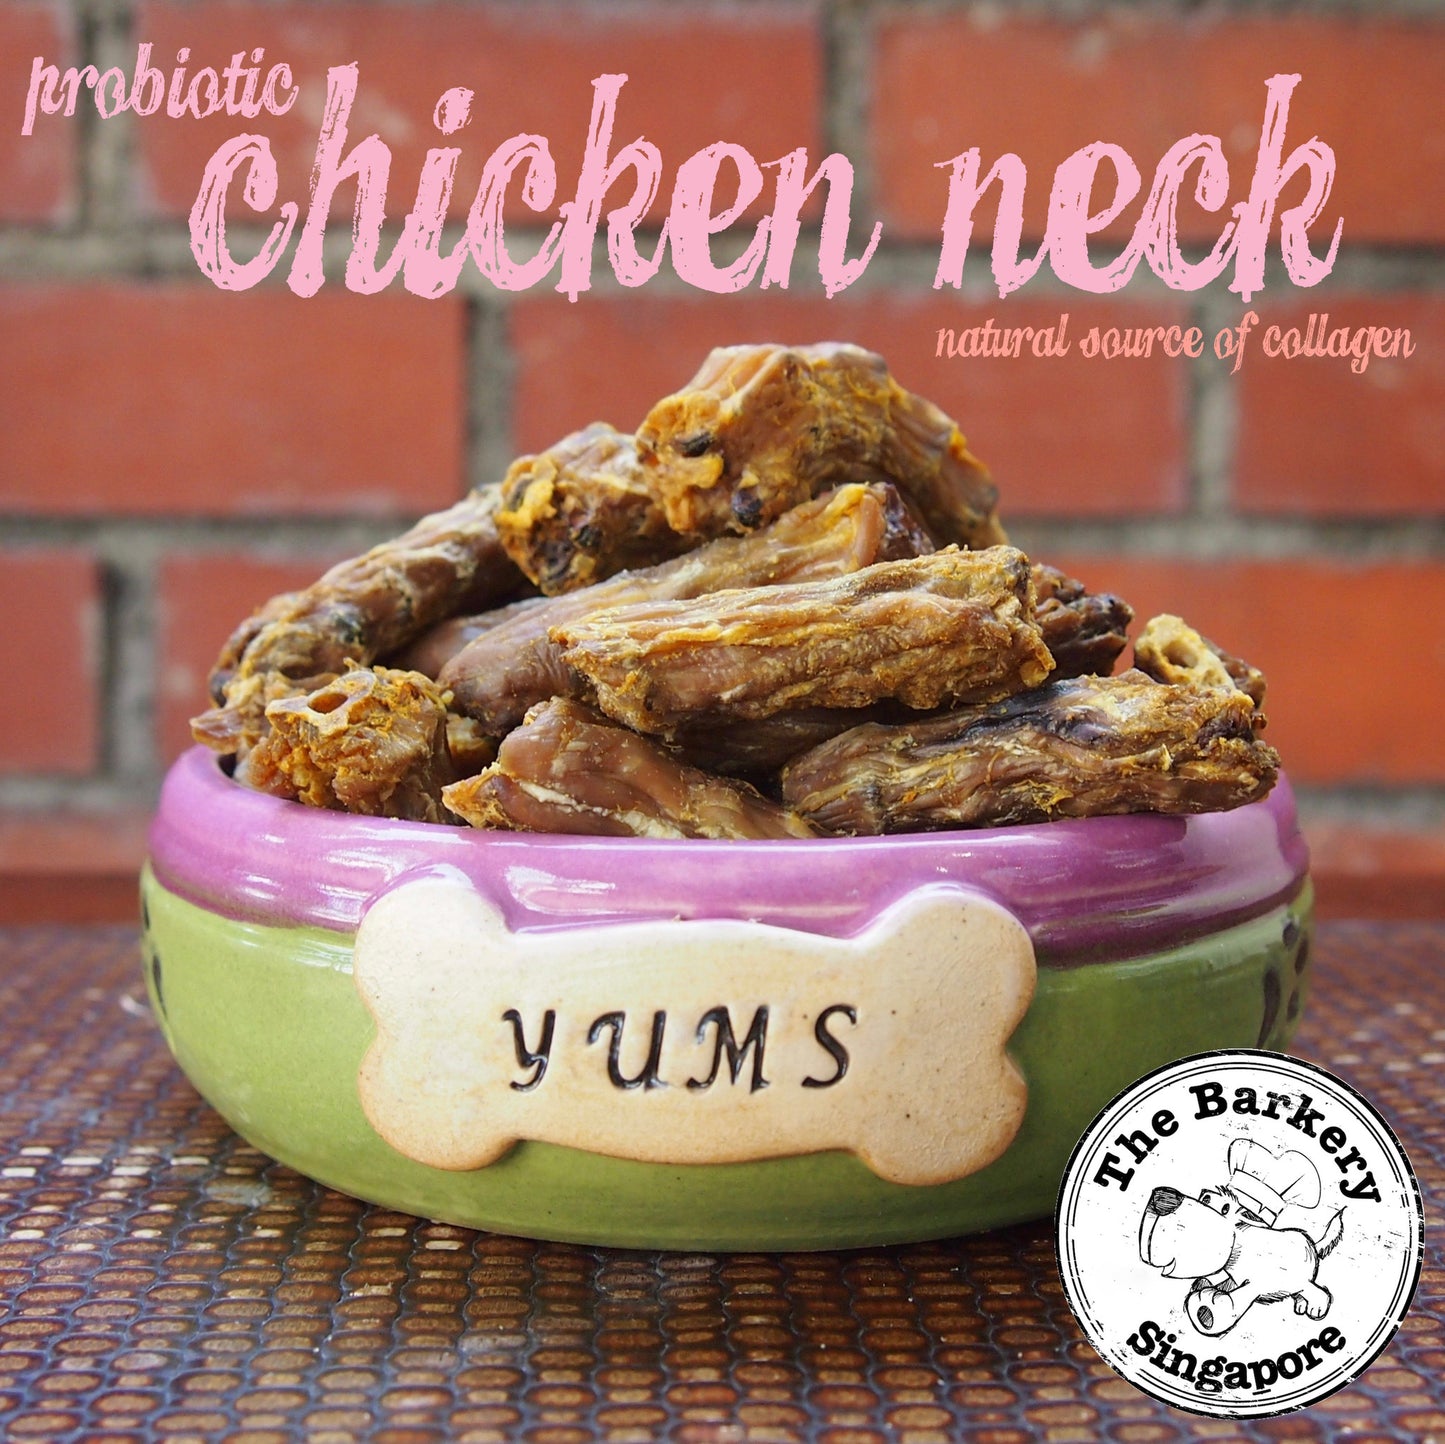 Probiotic Chicken Neck